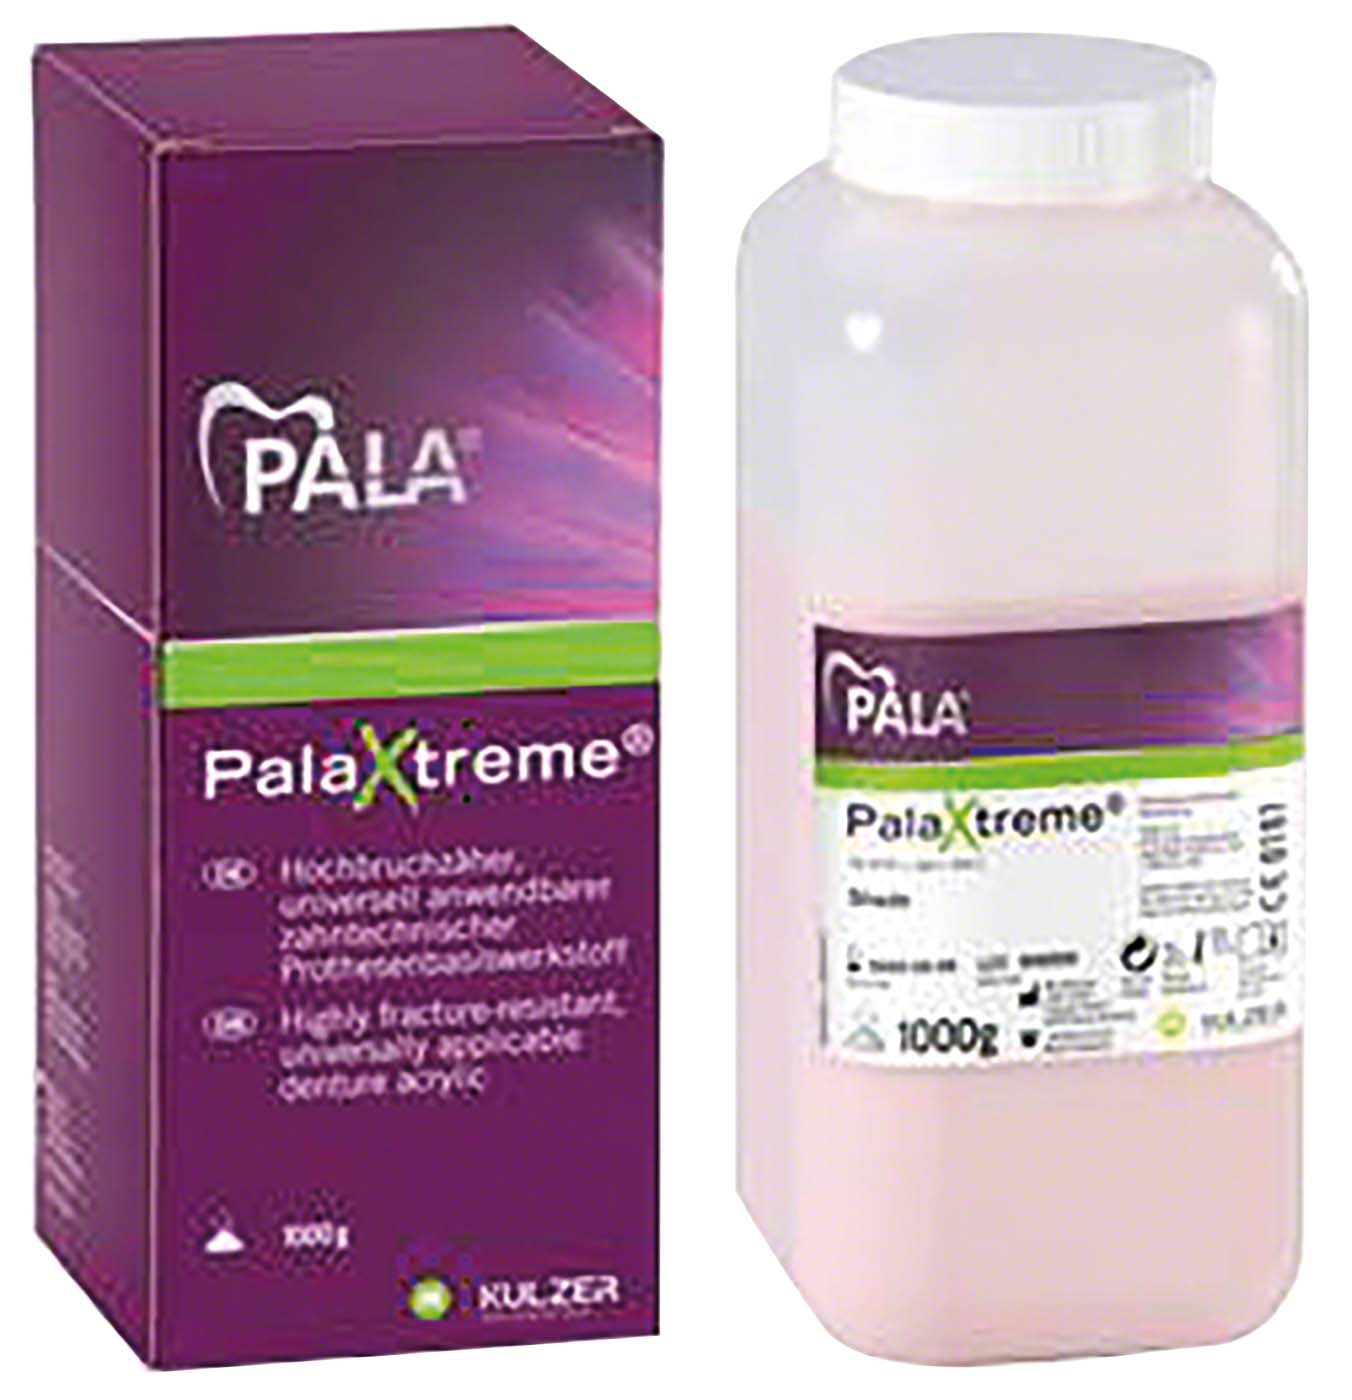 PalaXtreme® Kulzer